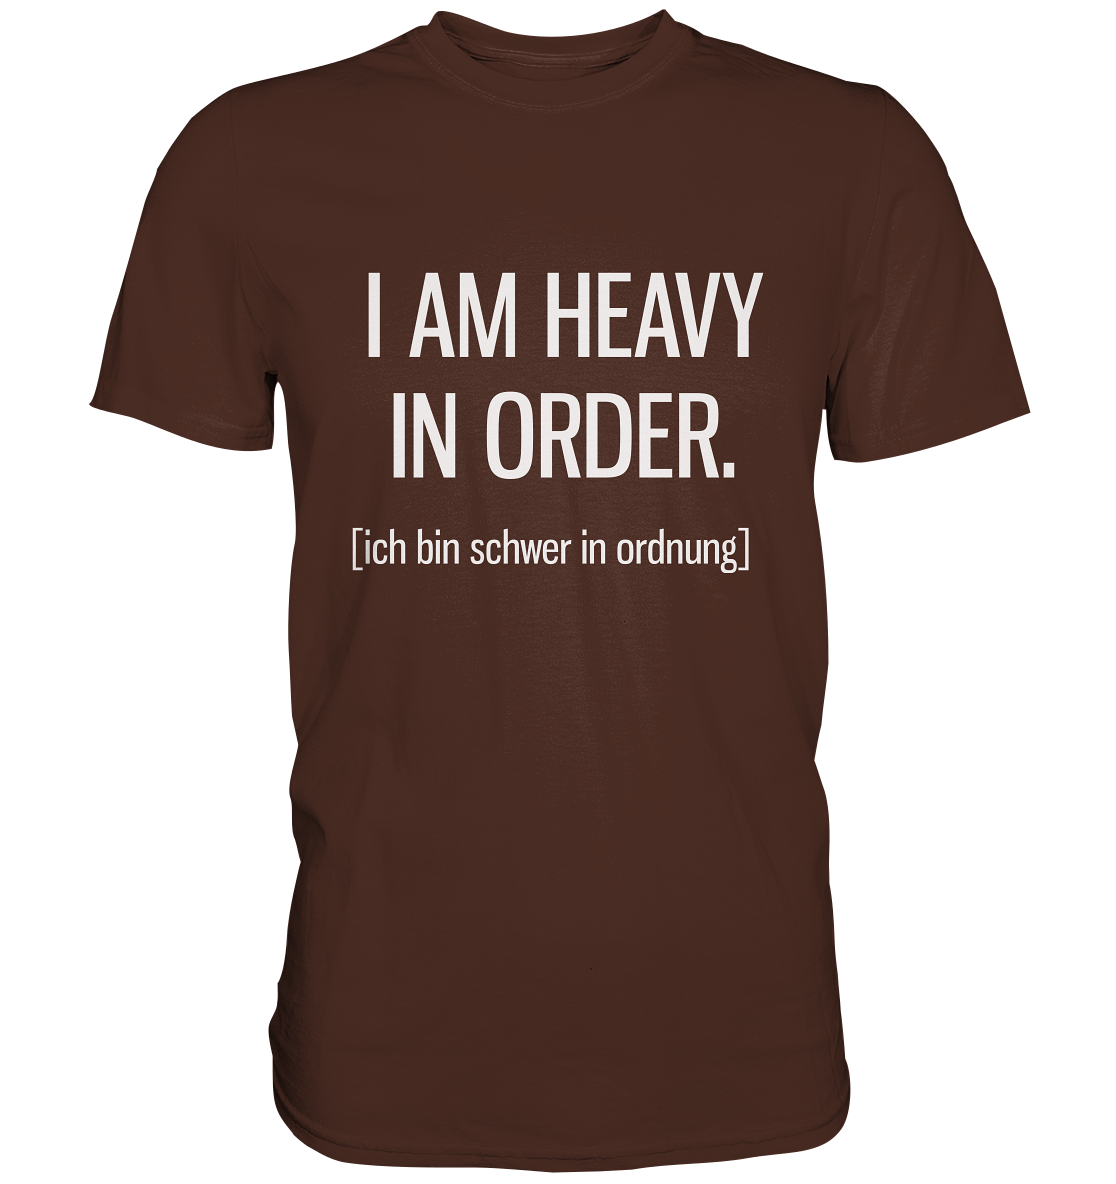 I am heavy in order. Englisch - Unisex Premium Shirt